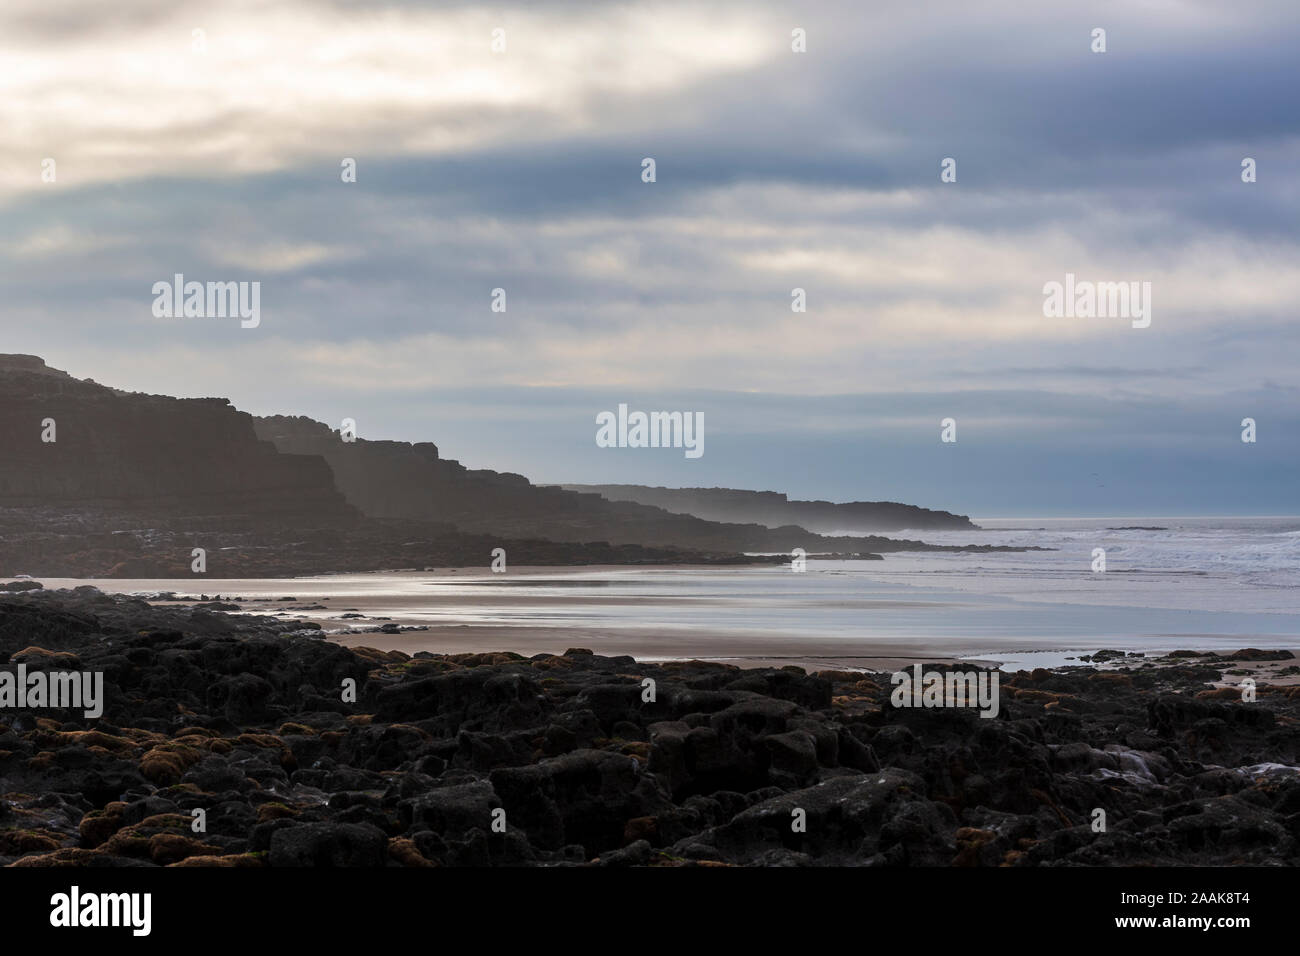 Ver atmosférica de las rocas, la playa y el mar en reposo Bay en Porthcawl, Gales, Reino Unido. Foto de stock